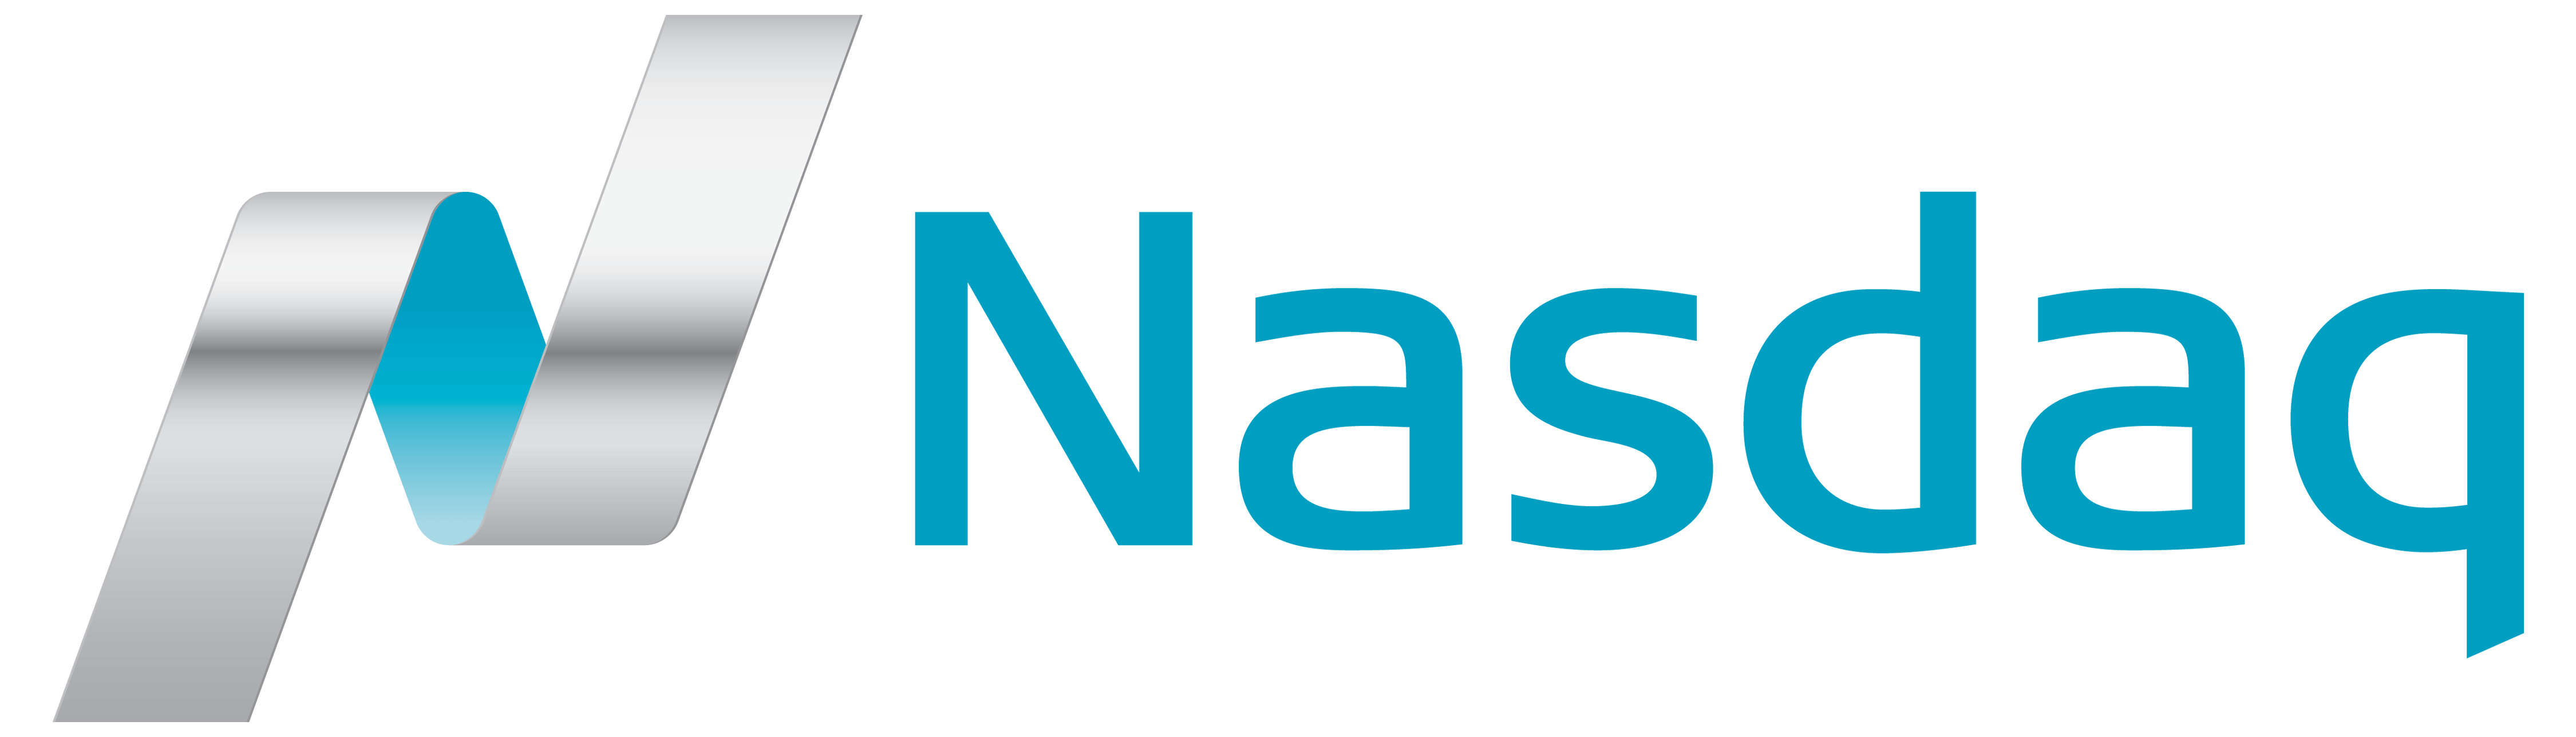 NASDAQ logo, logotype